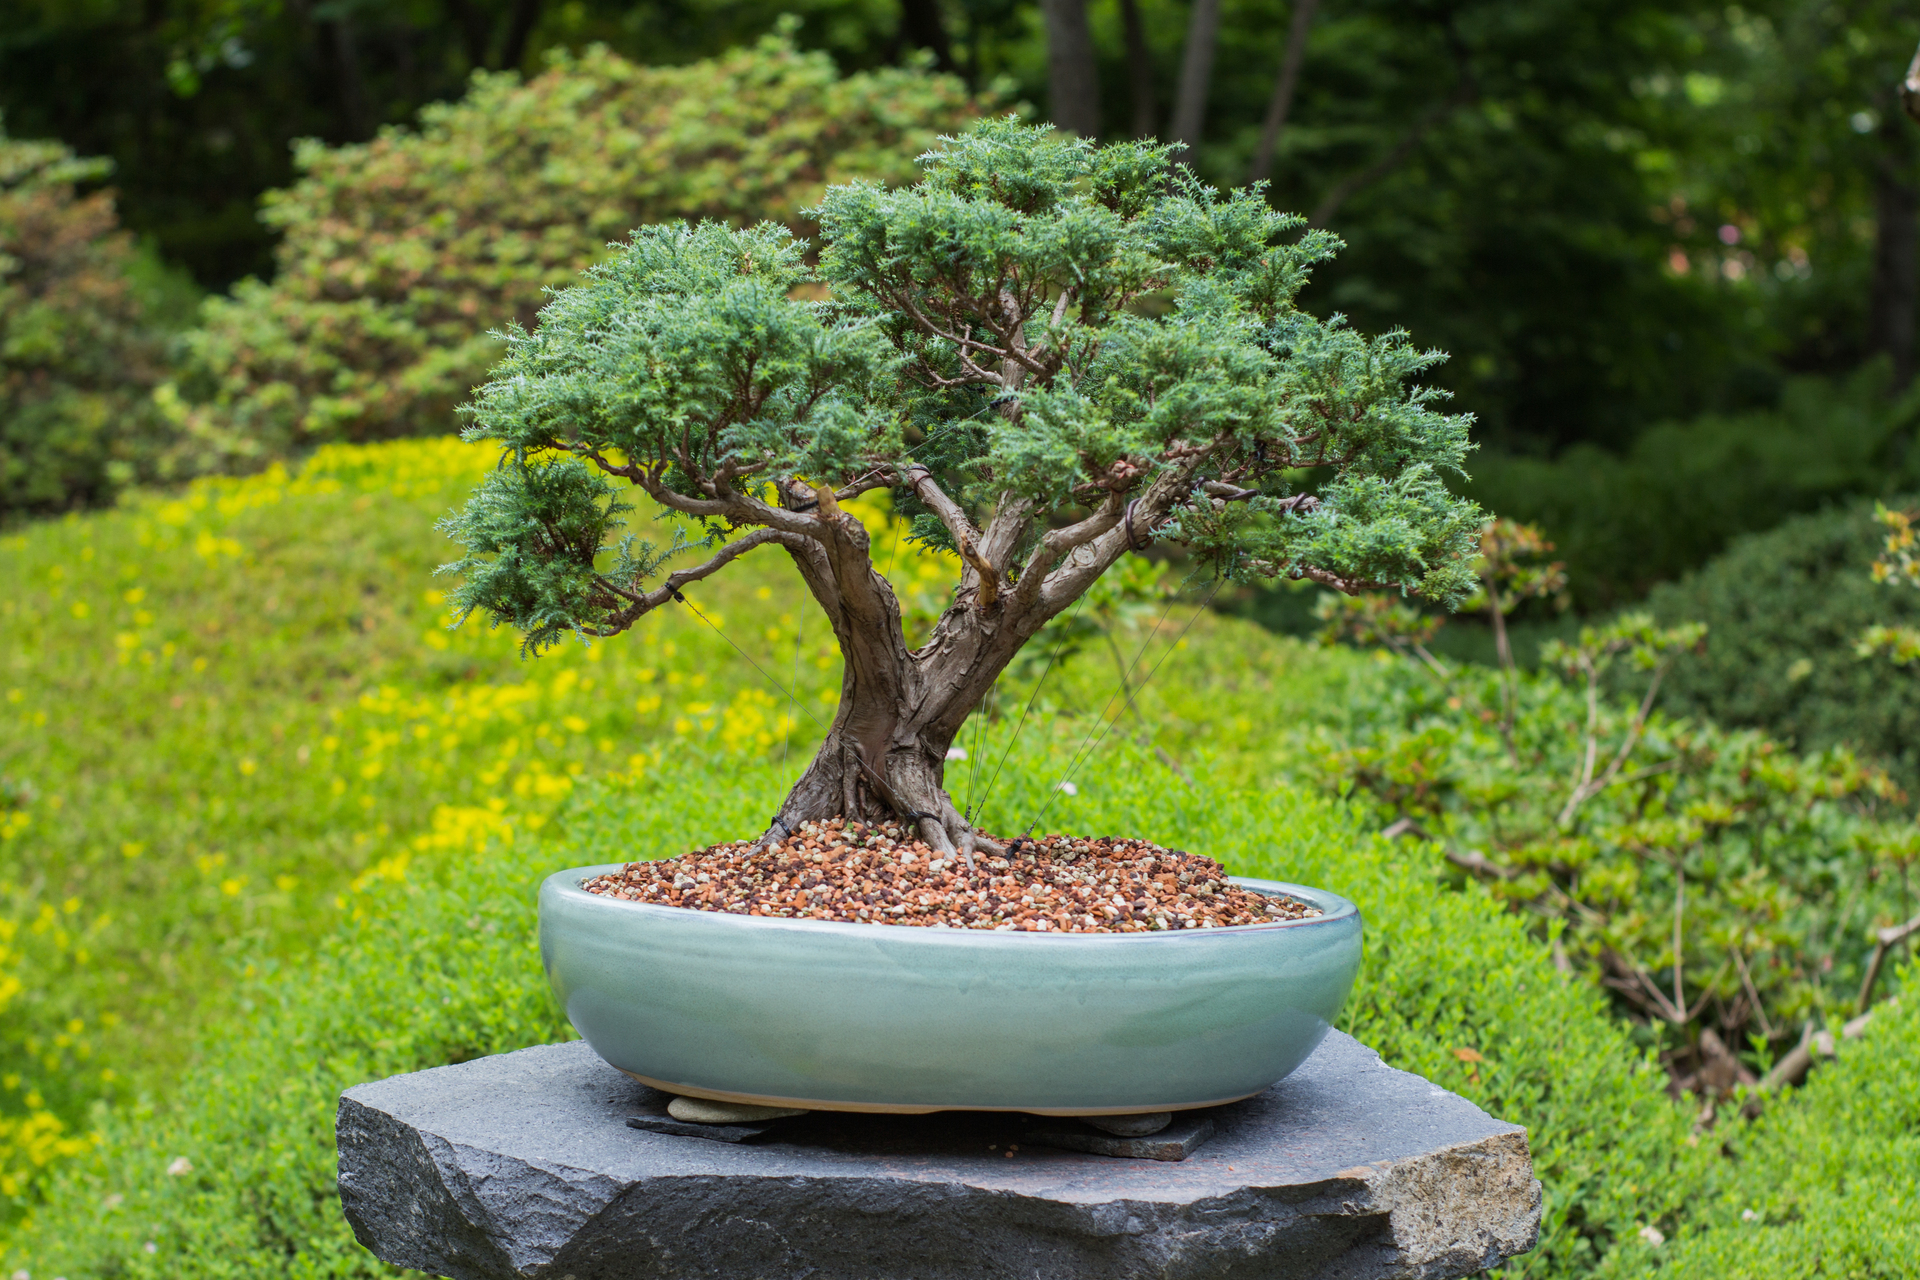 Na obrazku widoczne jest piękne drzewko bonsai w doniczce, które zostało umieszczone w ogrodzie japońskim. Roślina ta zachwyca swoim delikatnym, miniaturowym kształtem oraz starannym wykończeniem. W tle obrazka widać kamienny mostek, kolorowe liście i drzewa, co podkreśla naturalny charakter ogrodu japońskiego. Drzewko bonsai jest ustawione na tle zielonego tła, co sprawia, że jego kształt i wykończenie są jeszcze bardziej widoczne. Obrazek ten może pomóc w zrozumieniu, jak piękne i harmonijne ogrody japońskie mogą być, pełne egzotycznych i unikalnych roślin, takich jak drzewko bonsai.